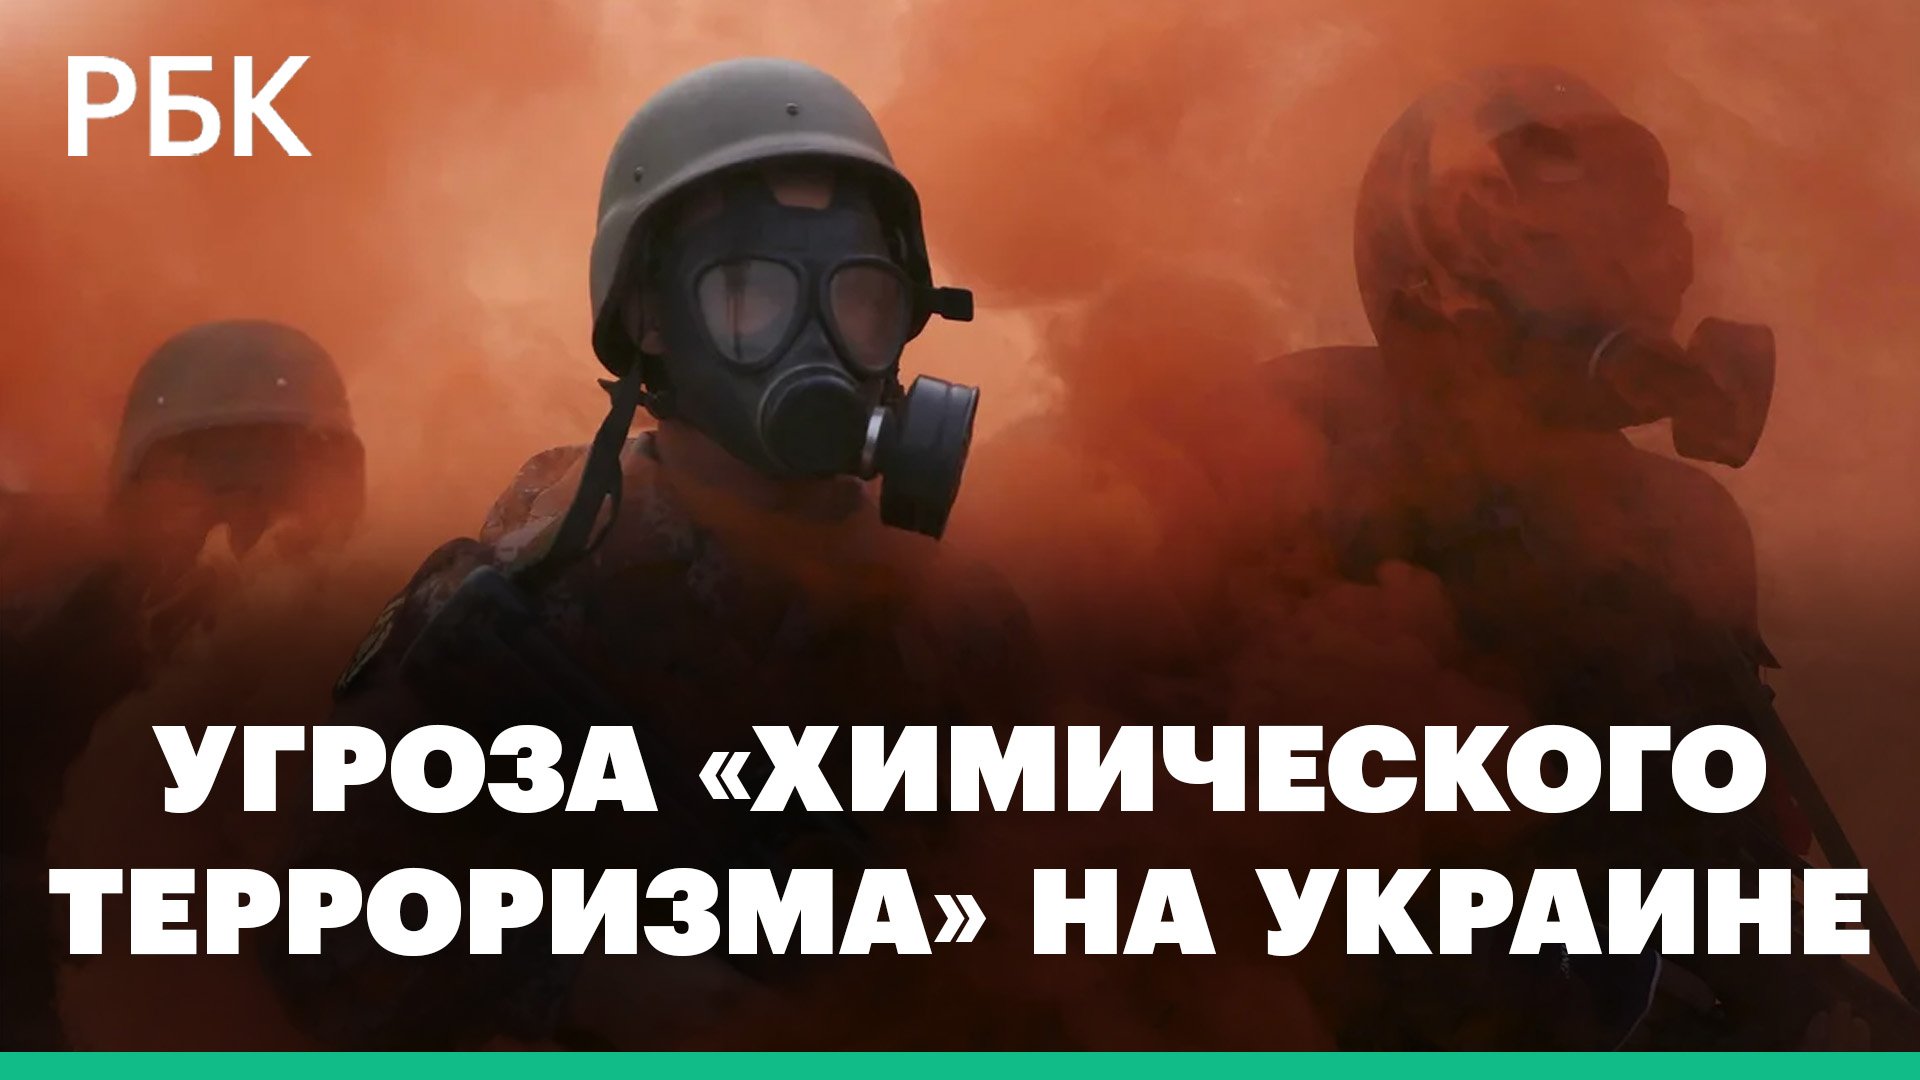 В МИДе увидели угрозу «химического терроризма» на Украине